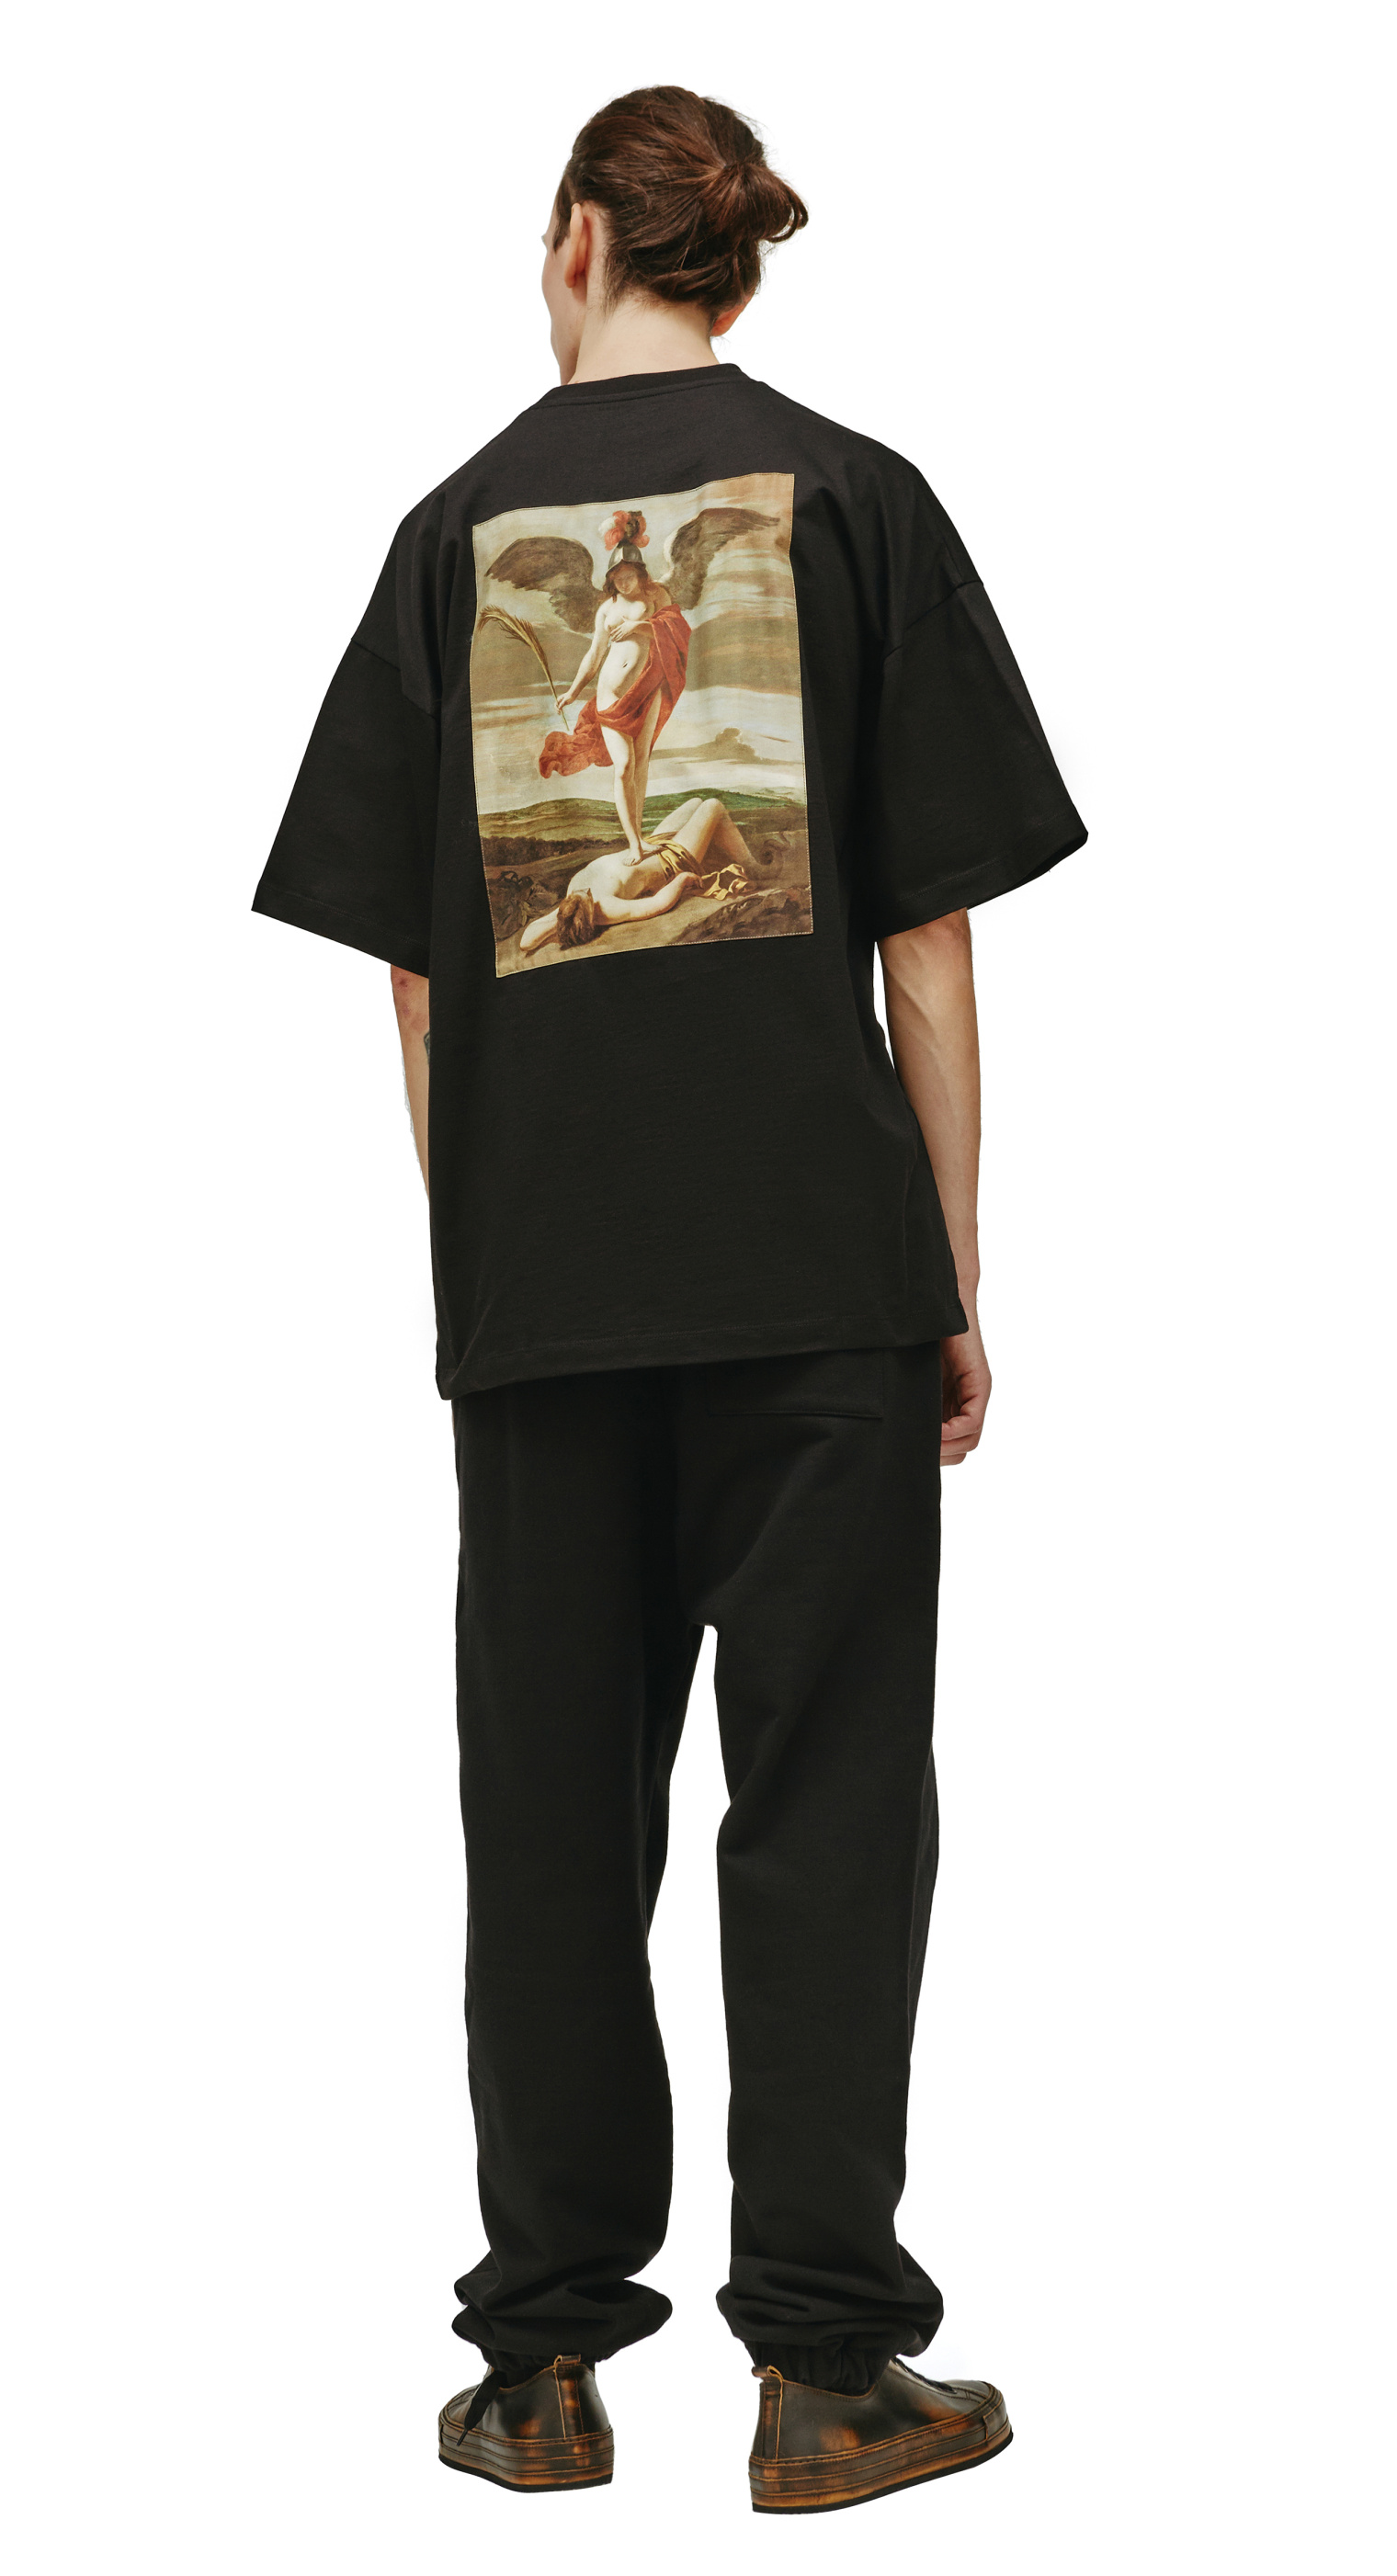 Buy OAMC men black oamc x louvre patch t-shirt for $319 online on 